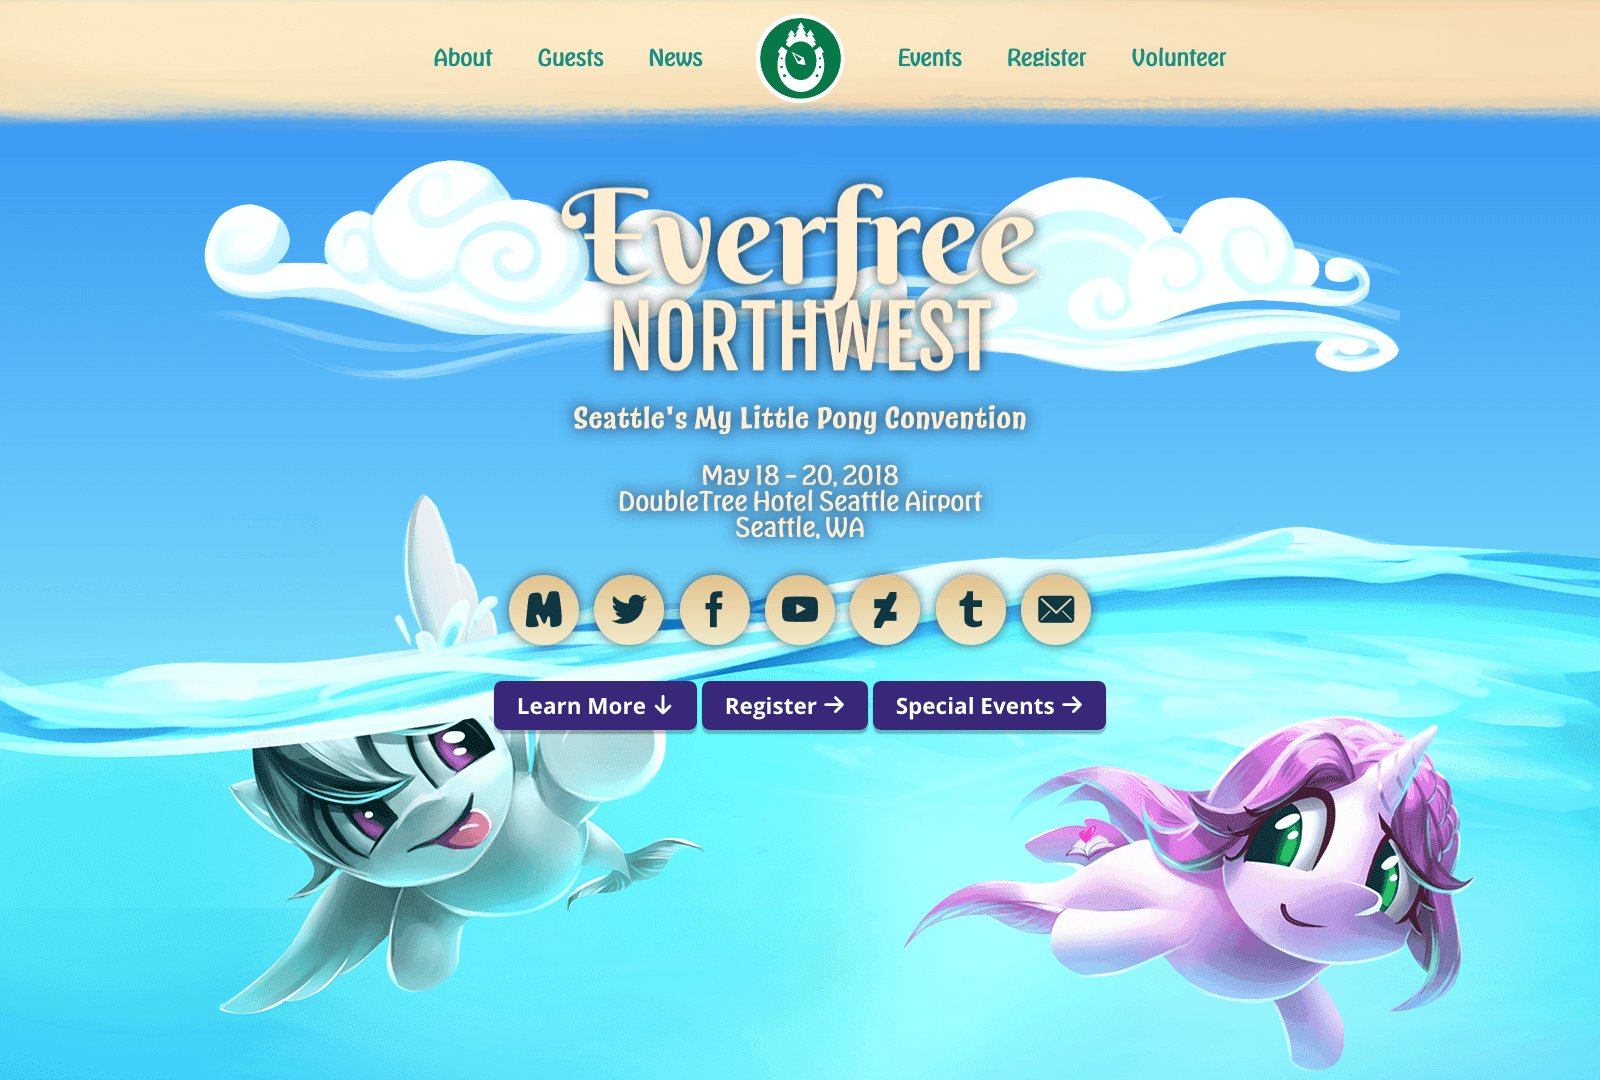 "Everfree Northwest desktop site"